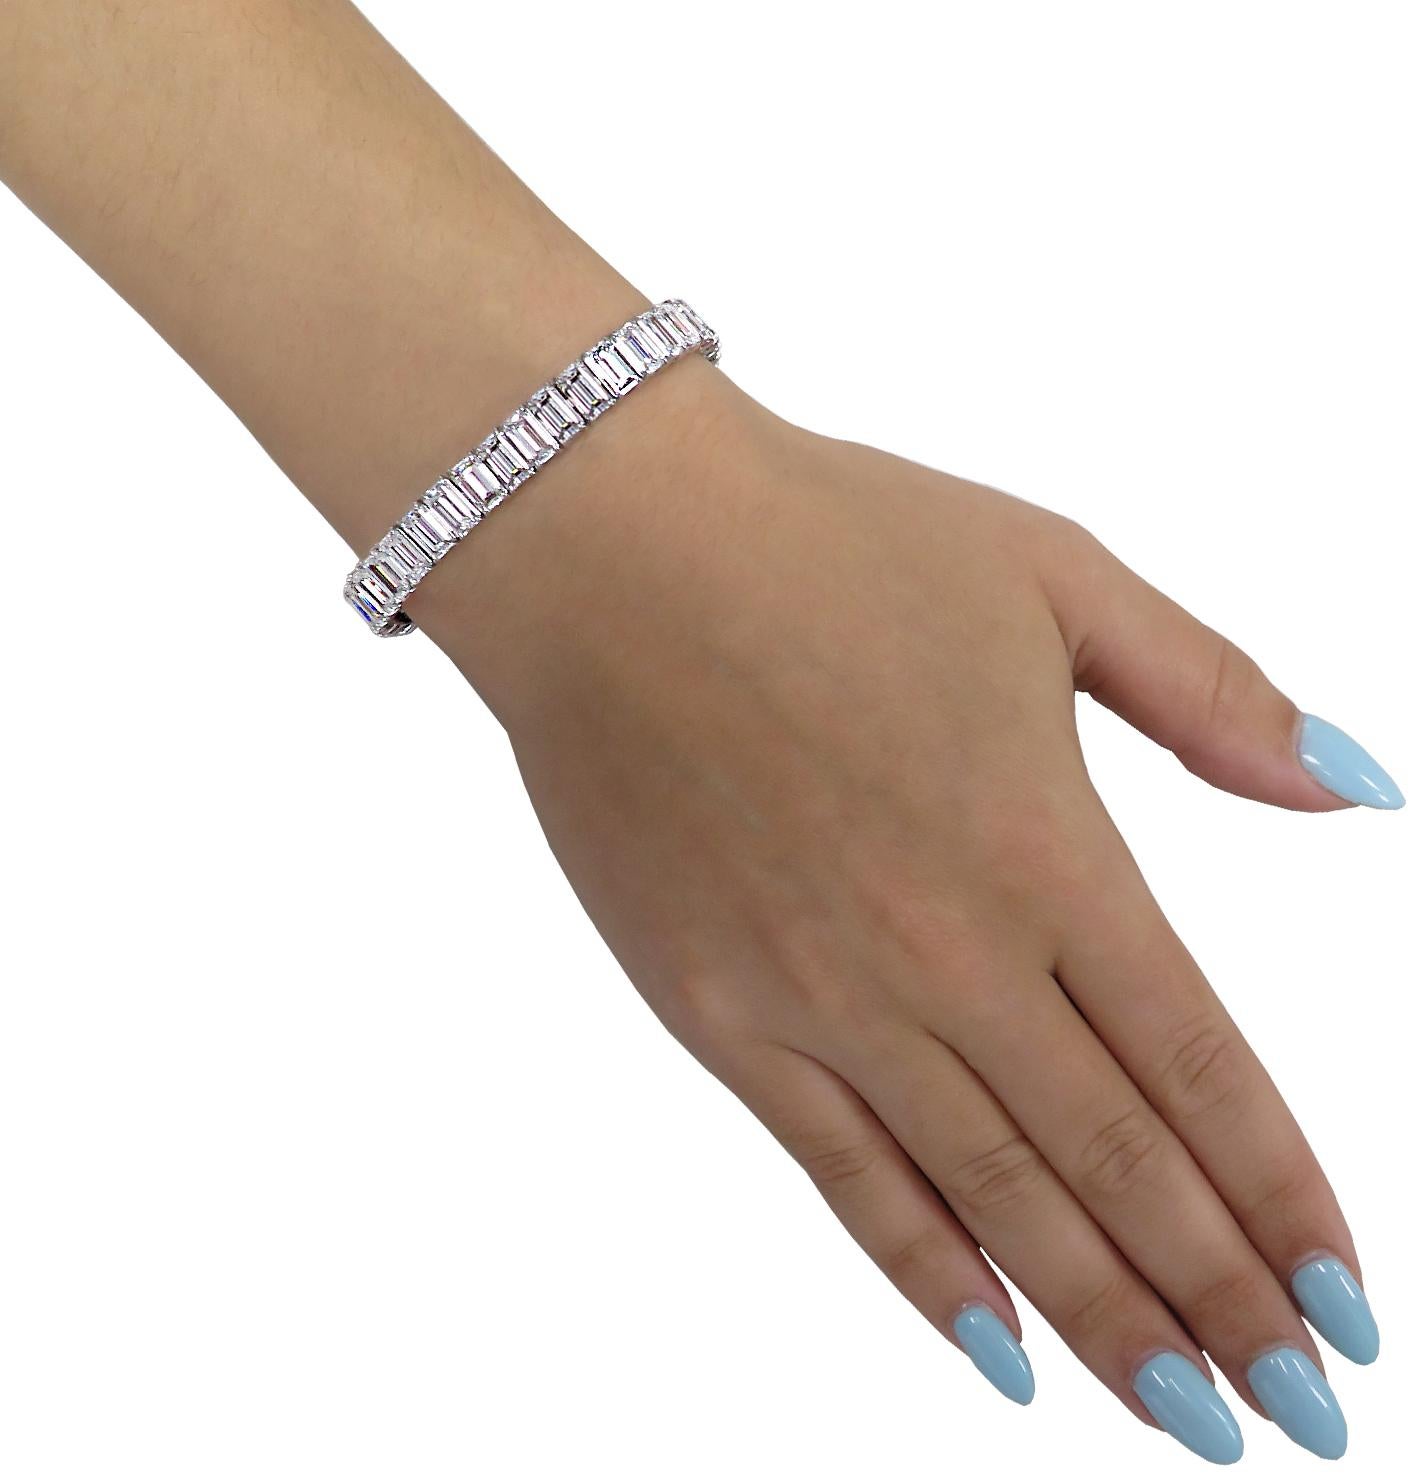 Scintillating Vivid Diamonds Emerald Cut Diamantarmband fachmännisch in Platin gefertigt, präsentiert 40 spektakuläre GIA zertifiziert Smaragd geschnittenen Diamanten mit einem Gesamtgewicht von 31,9 Karat, D-H Farbe, IF-VS2 Klarheit. Jeder Diamant